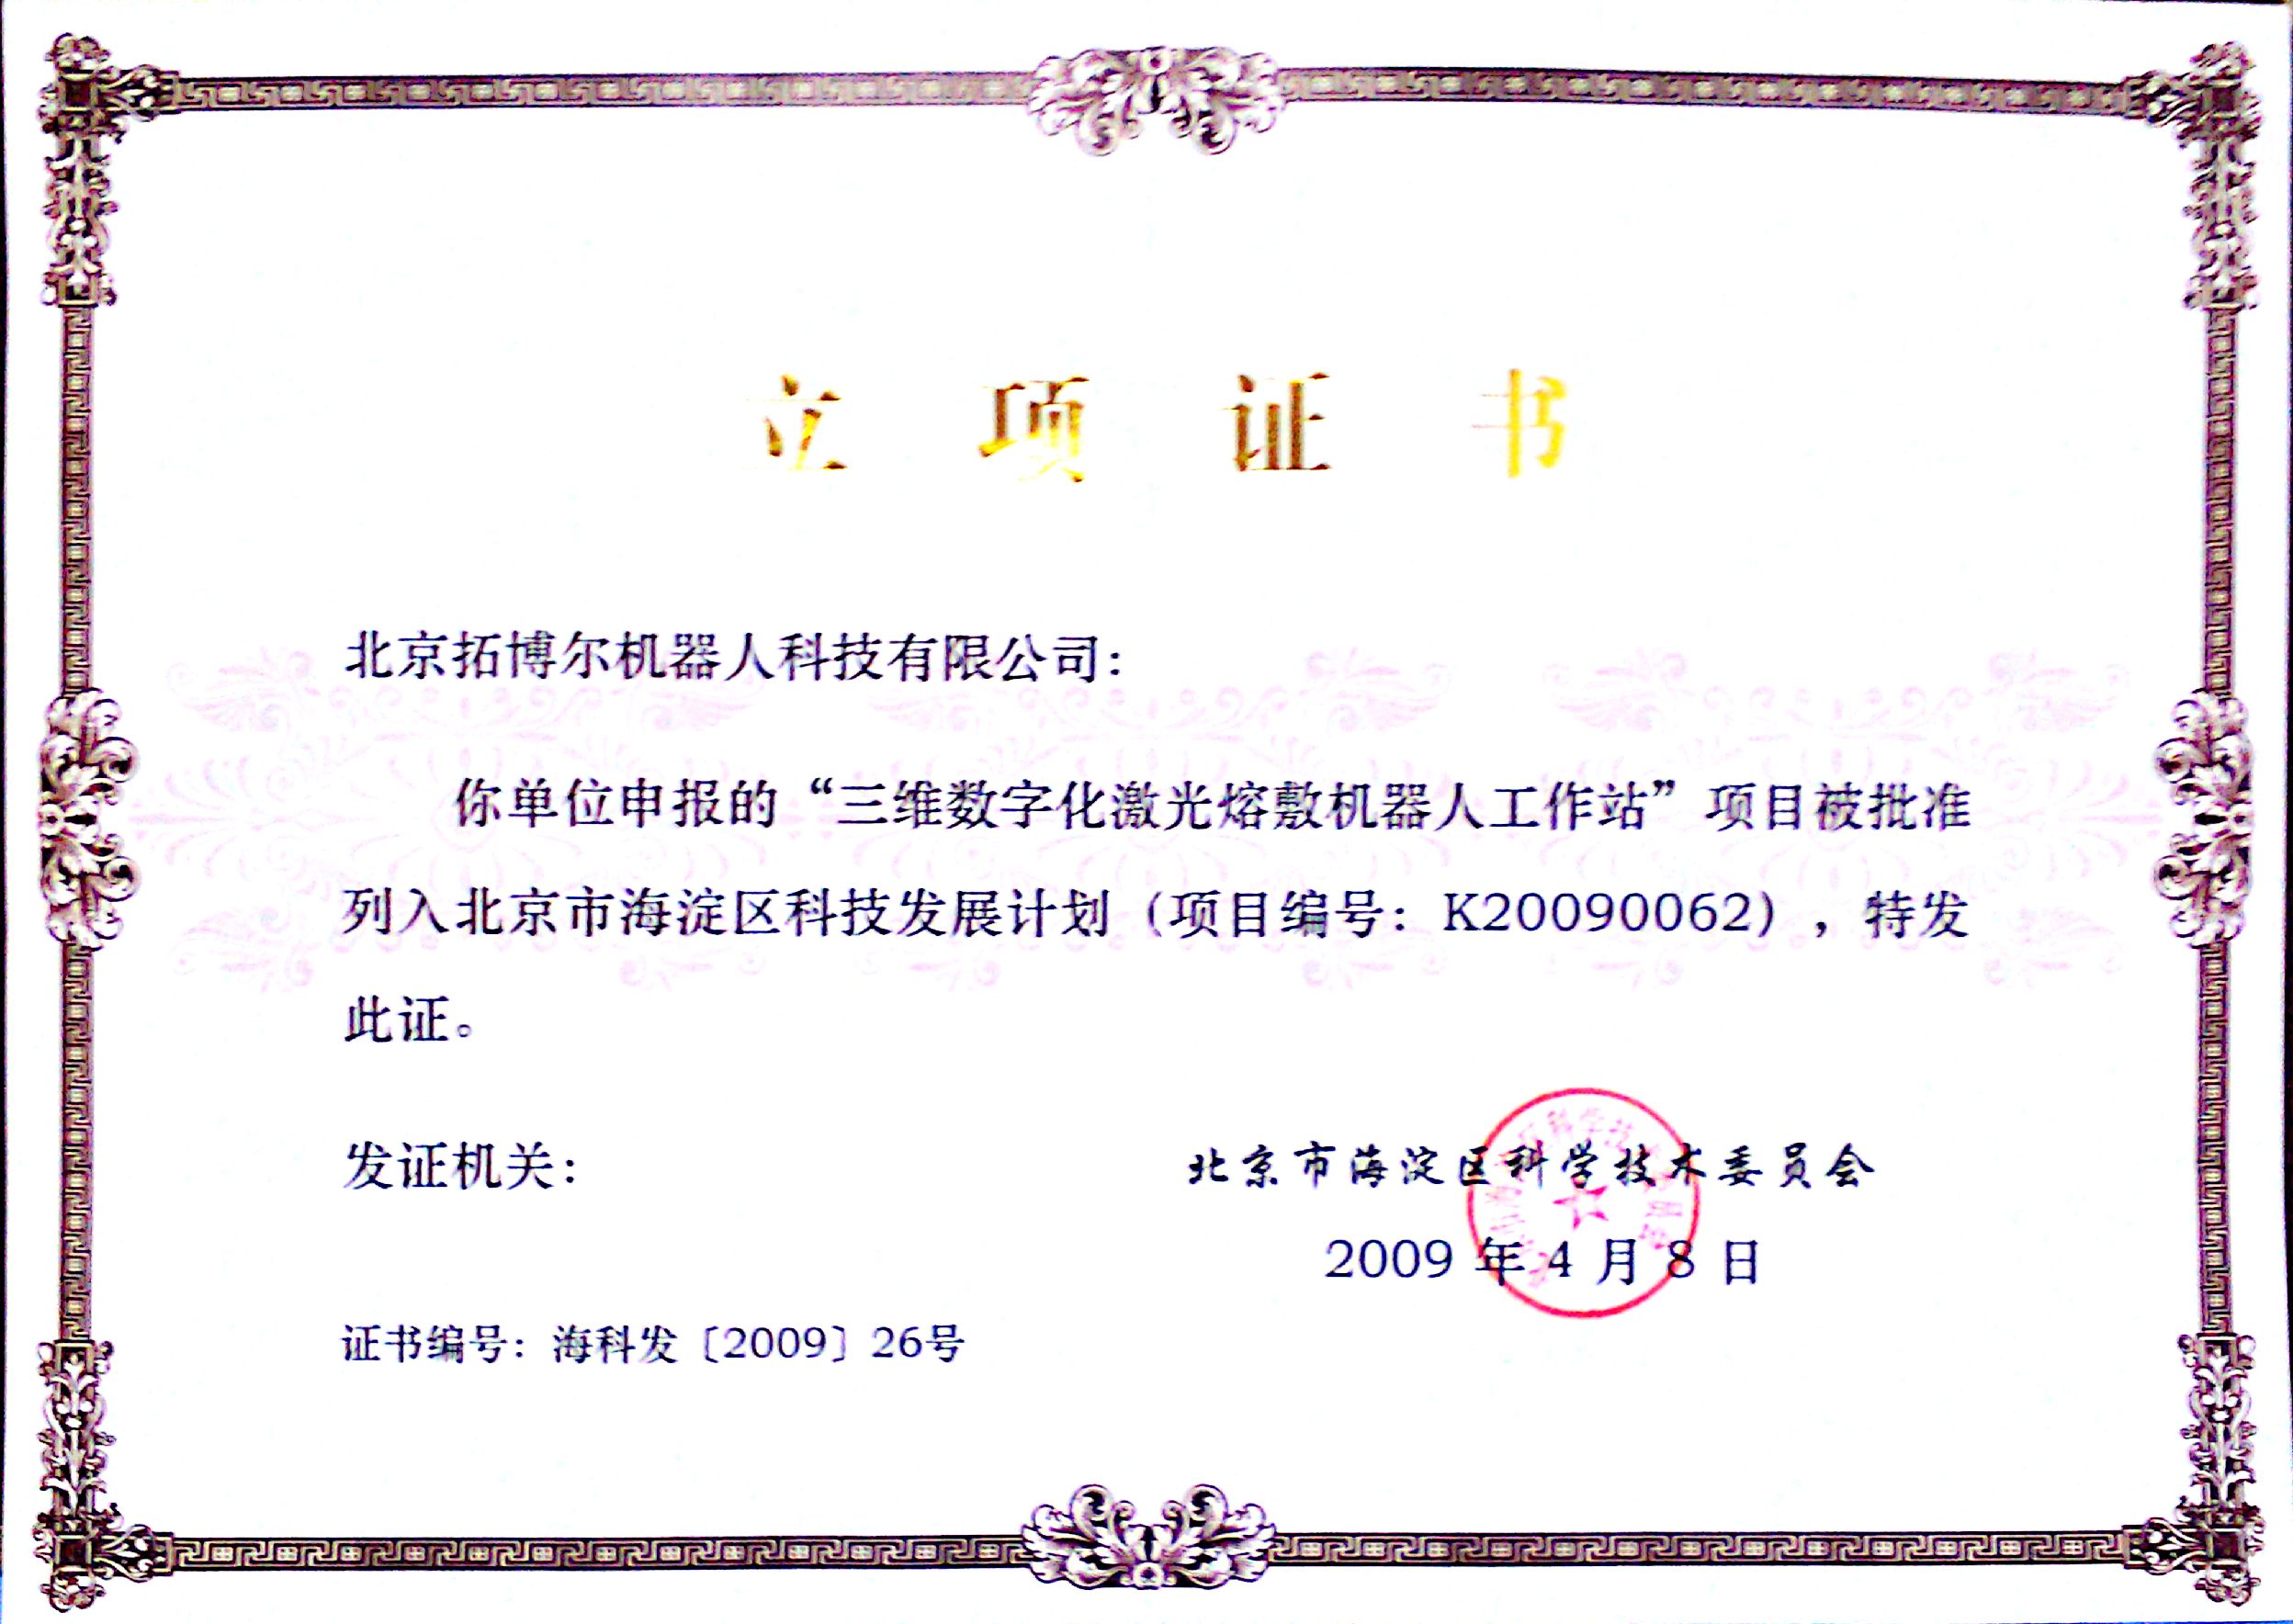 获得北京市科委立项证书